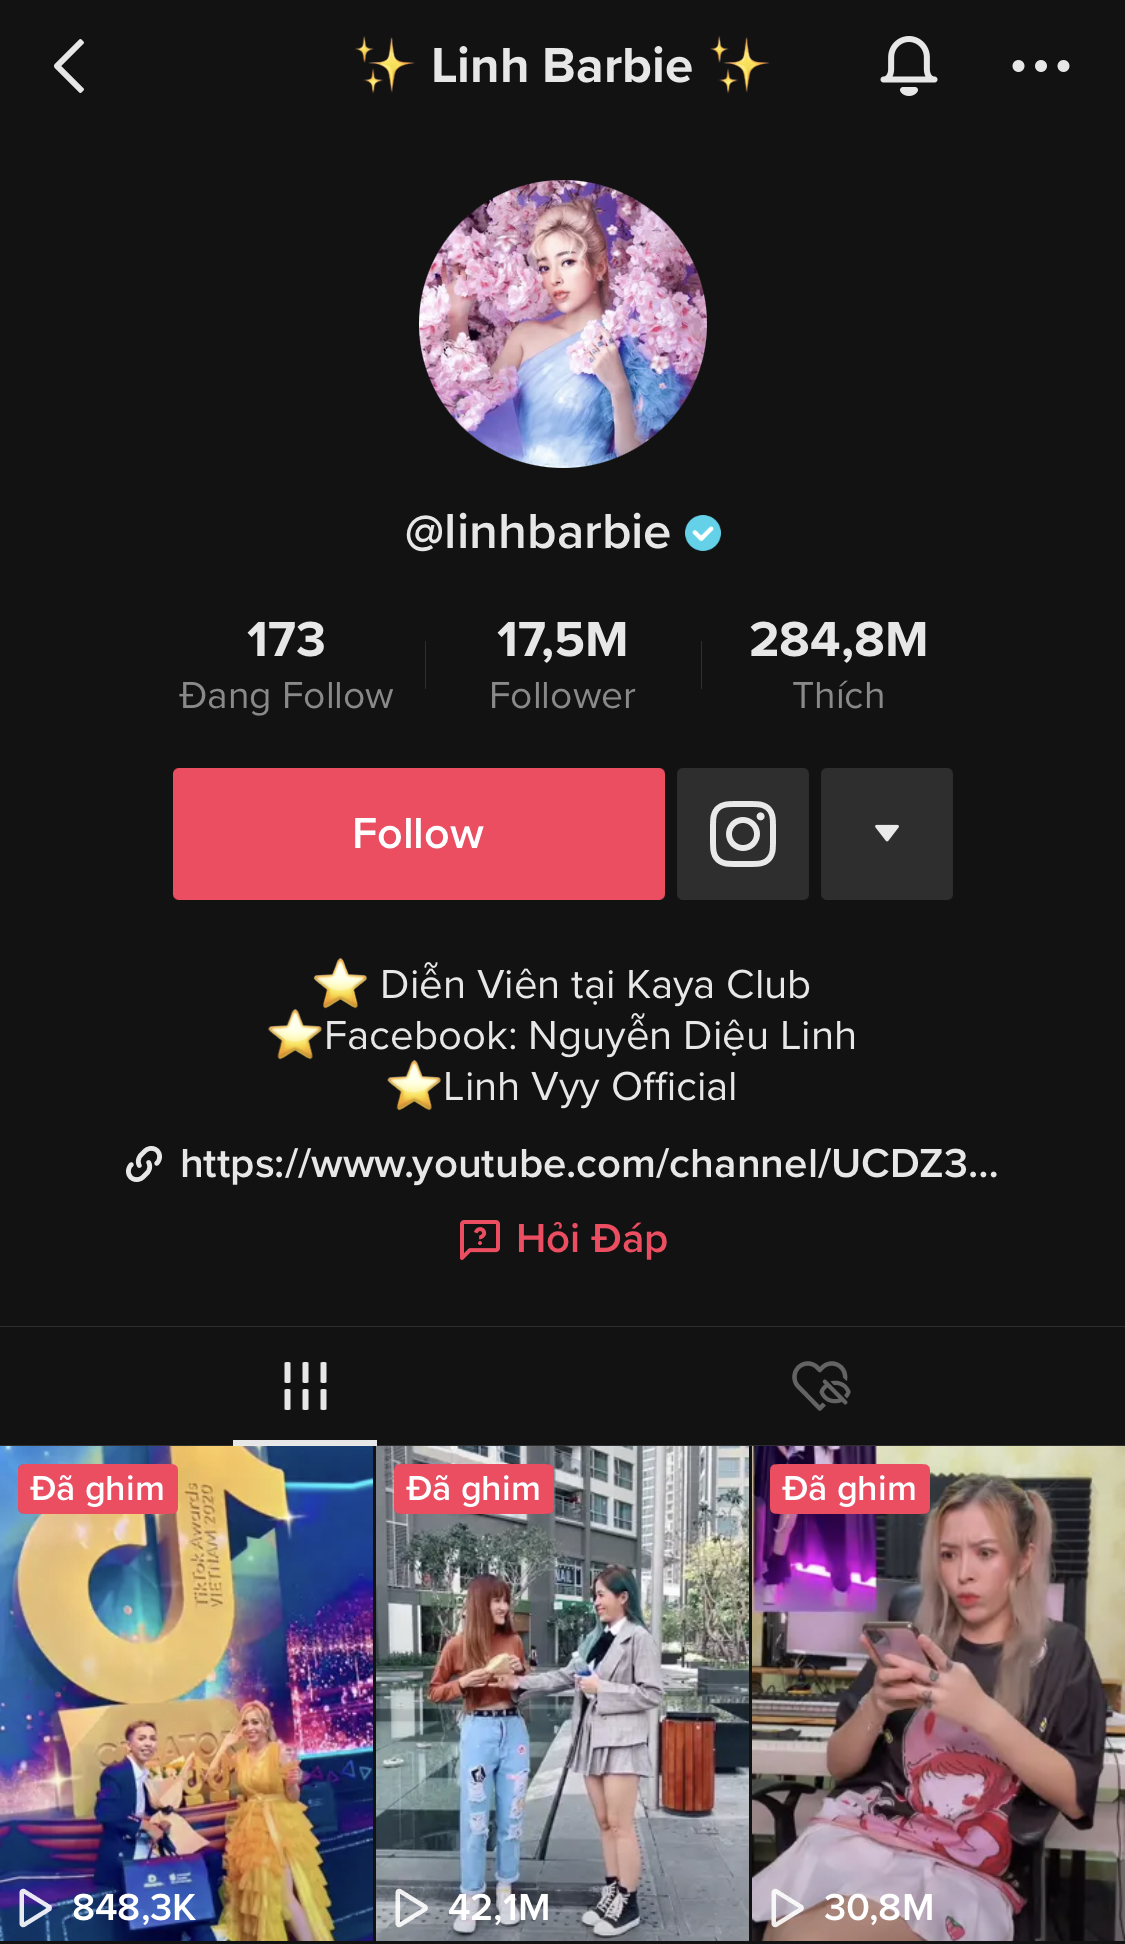 Linh Barbie hiện đang sở hữu kênh Tiktok với 17,5 triệu lượt theo dõi. Các video của cô nàng đã thu về gần 285 triệu lượt thích trên Tiktok.